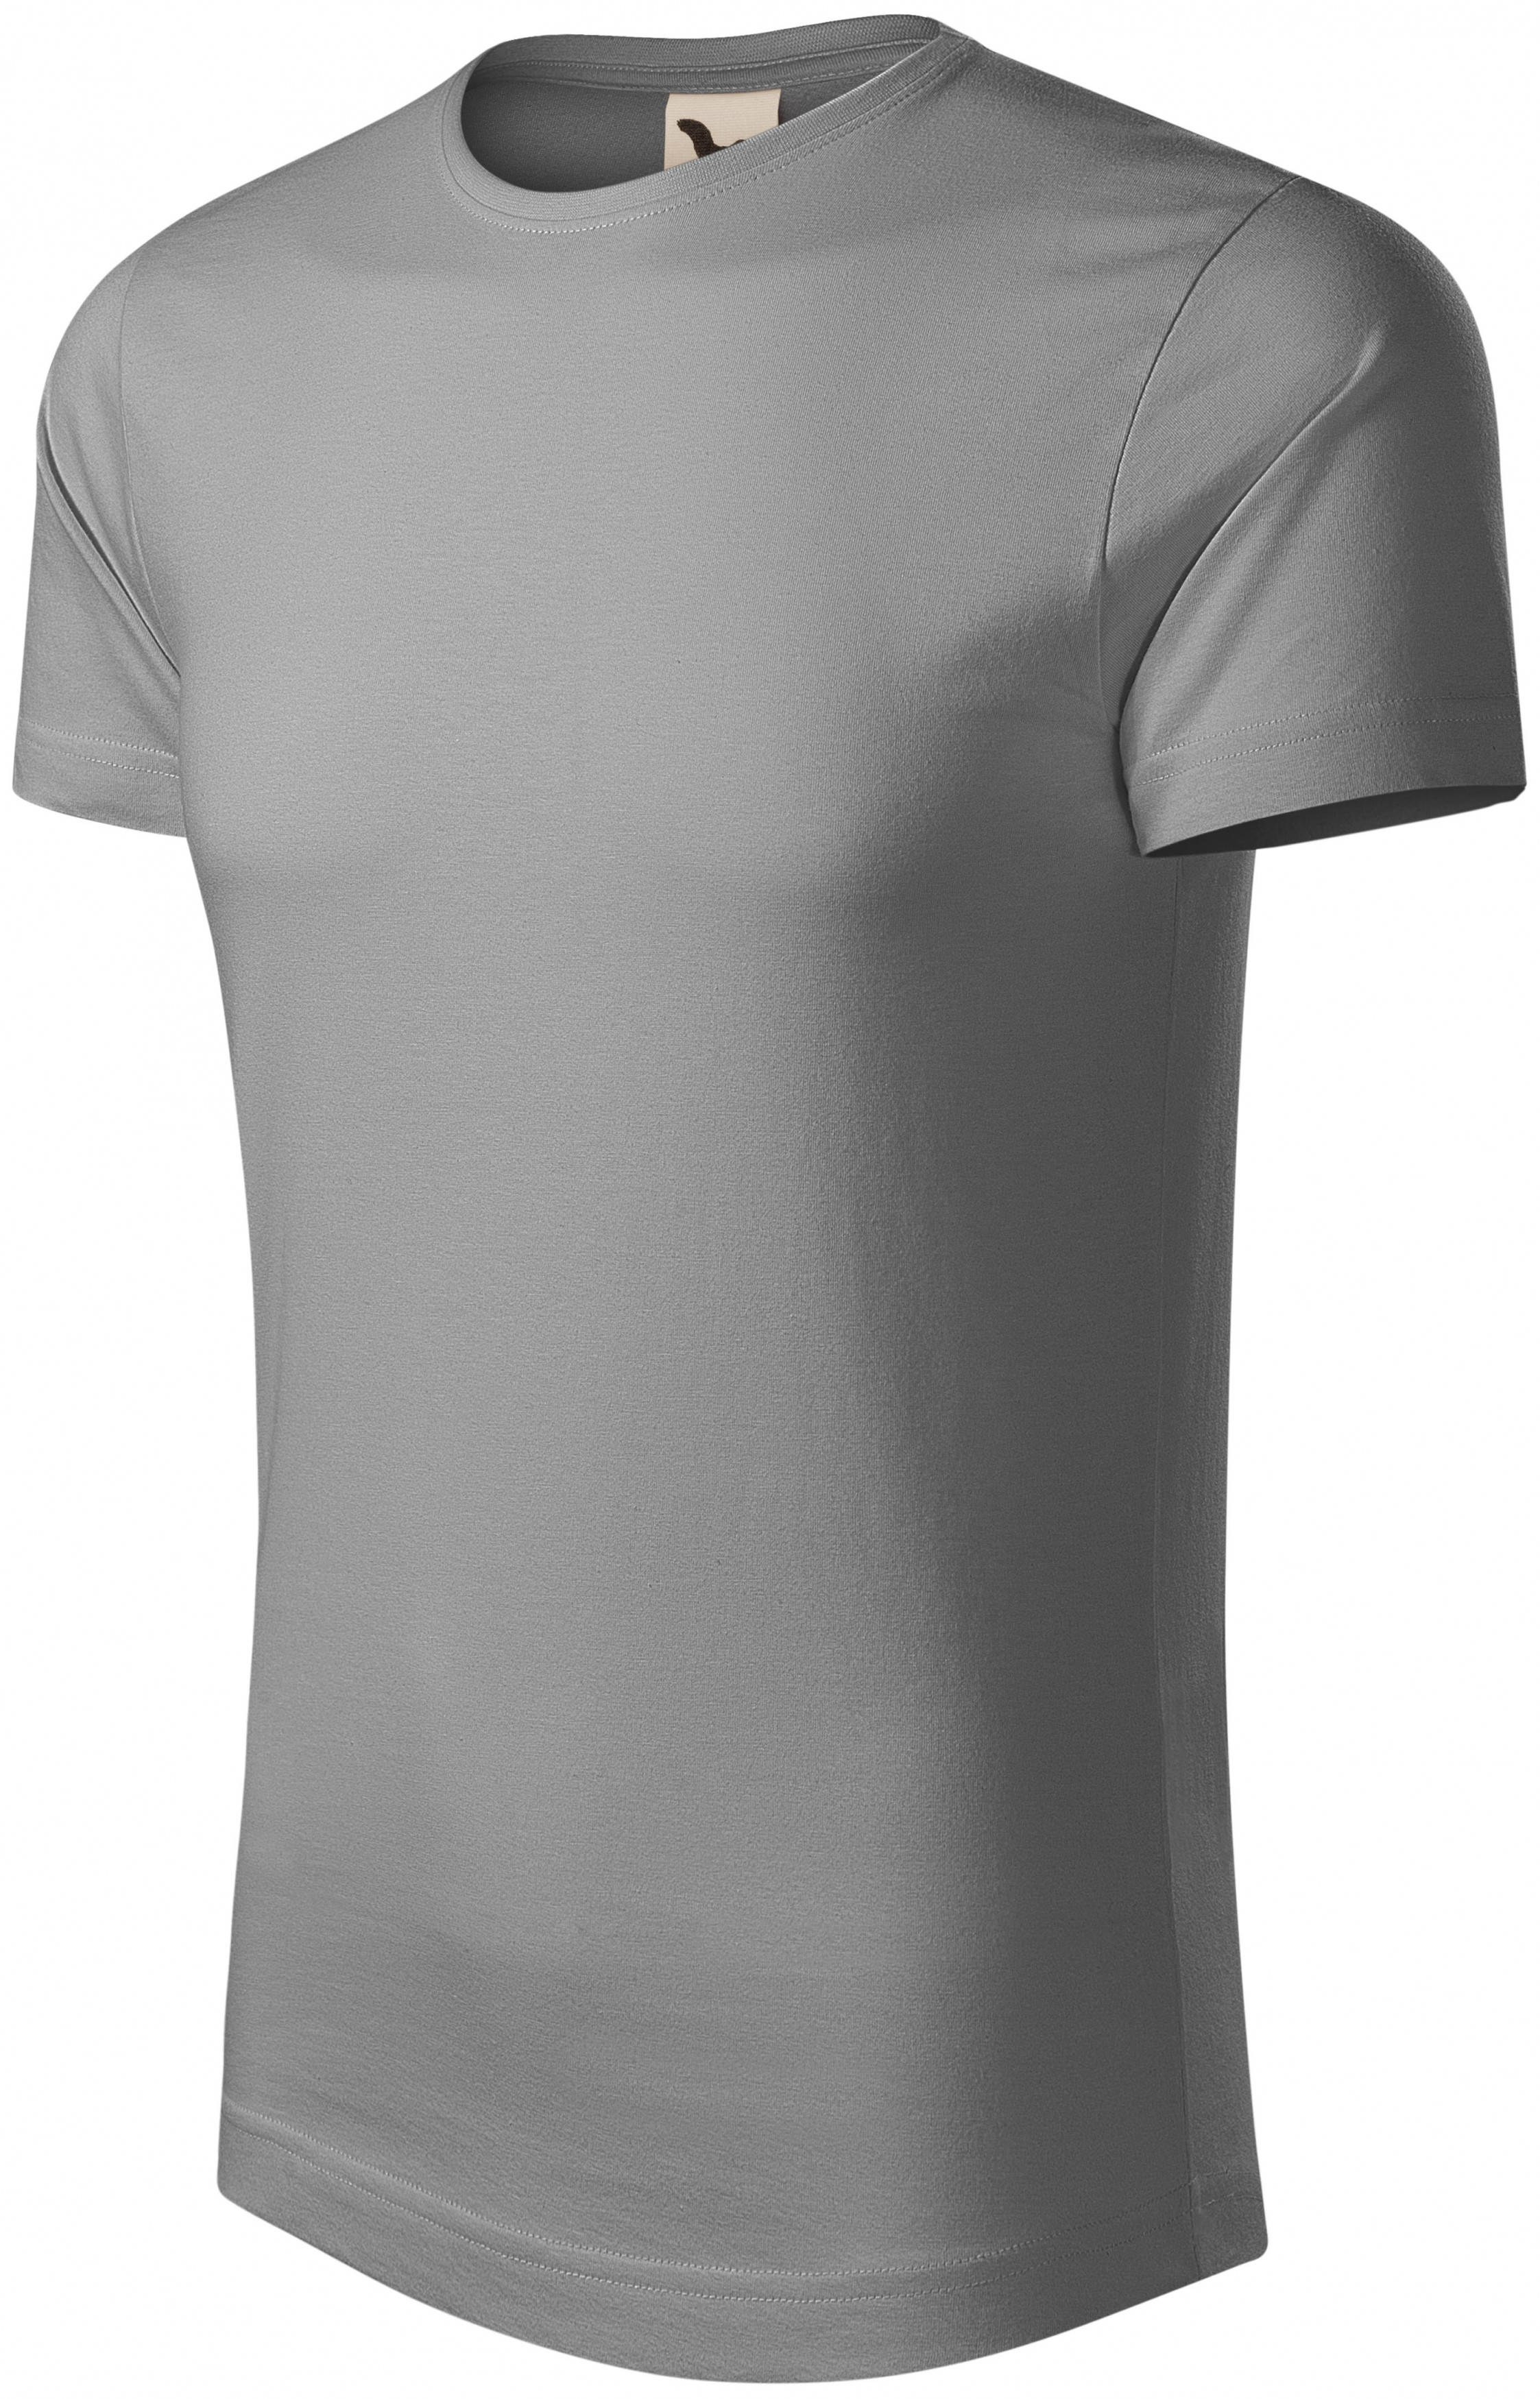 Pánske tričko, organická bavlna, starostrieborná, XL